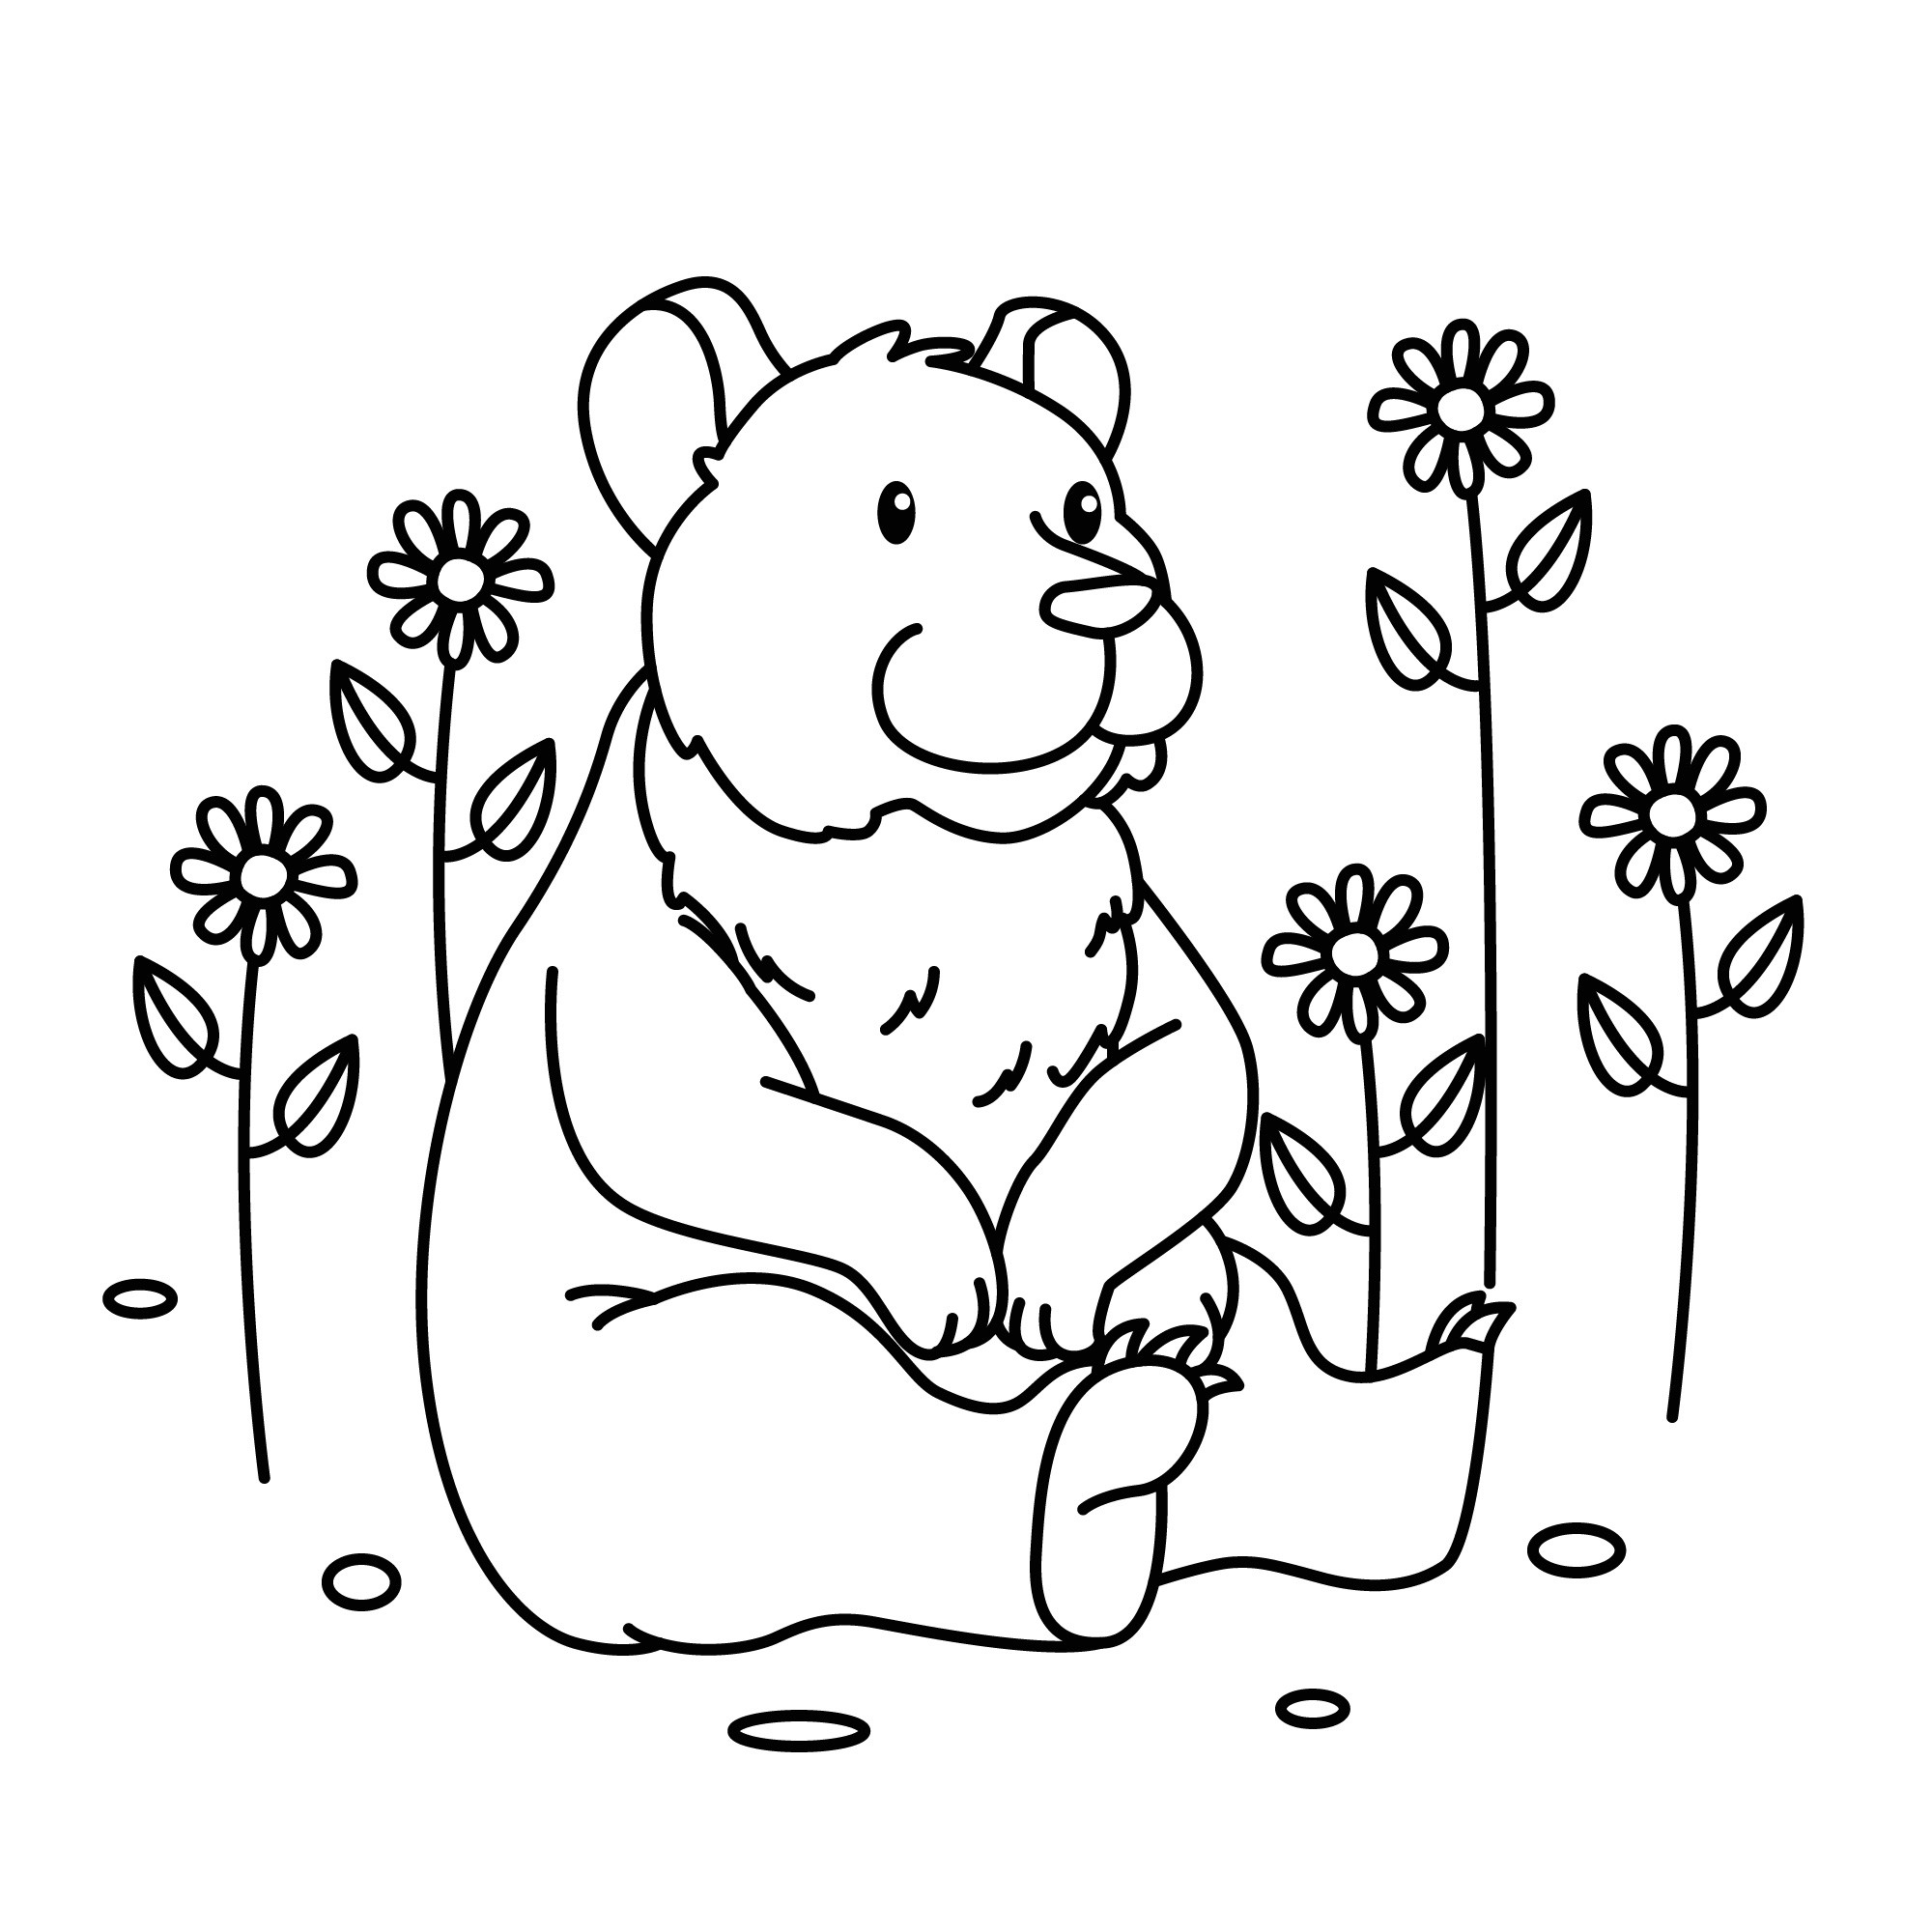 Раскраска для детей: большой медведь сидит на поляне с ромашками